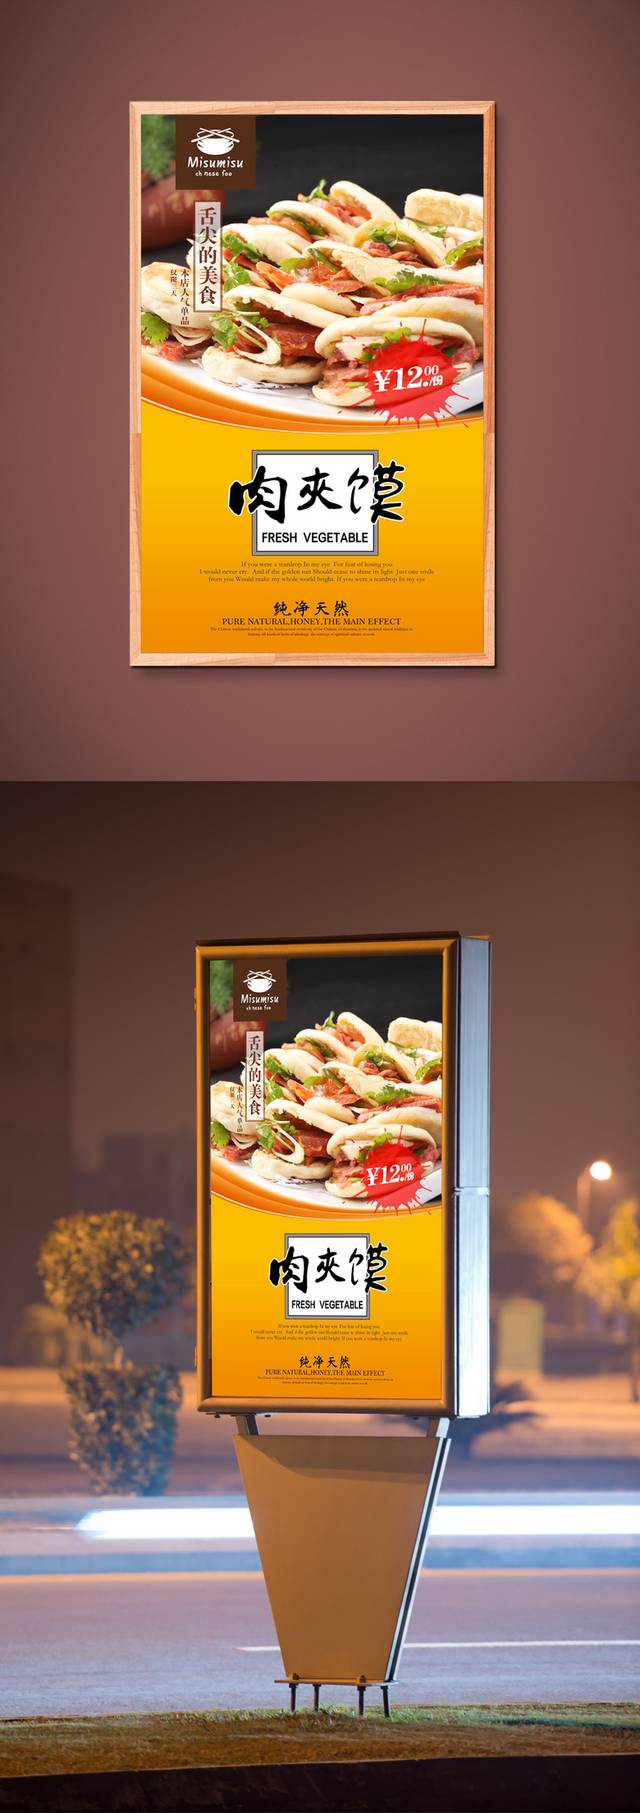 高清肉夹馍促销海报设计模板psd